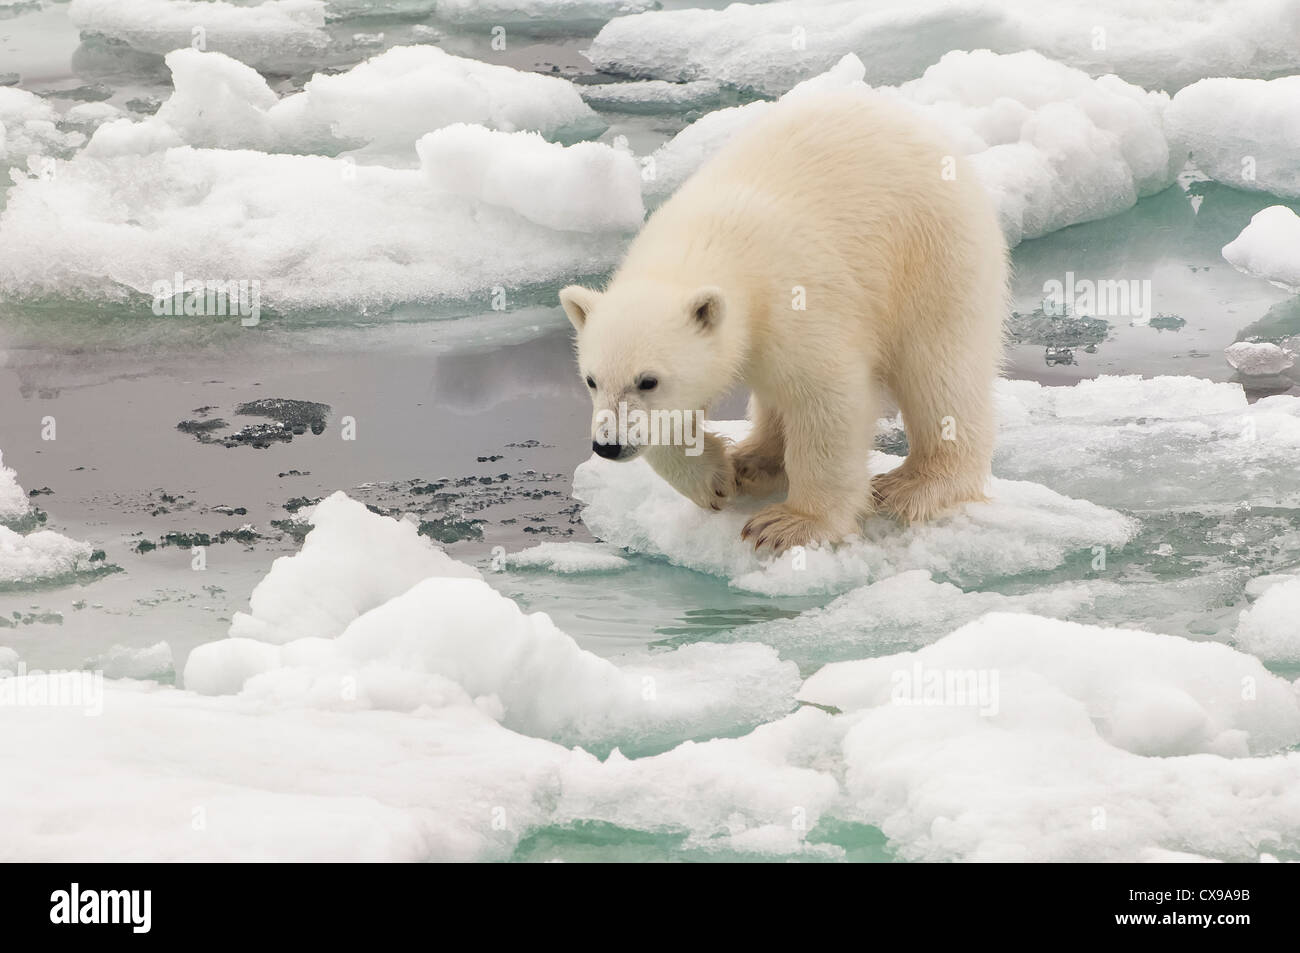 L'ours polaire (Ursus maritimus) cub sautant par-dessus la banquise, archipel du Svalbard, mer de Barents, Norvège Banque D'Images